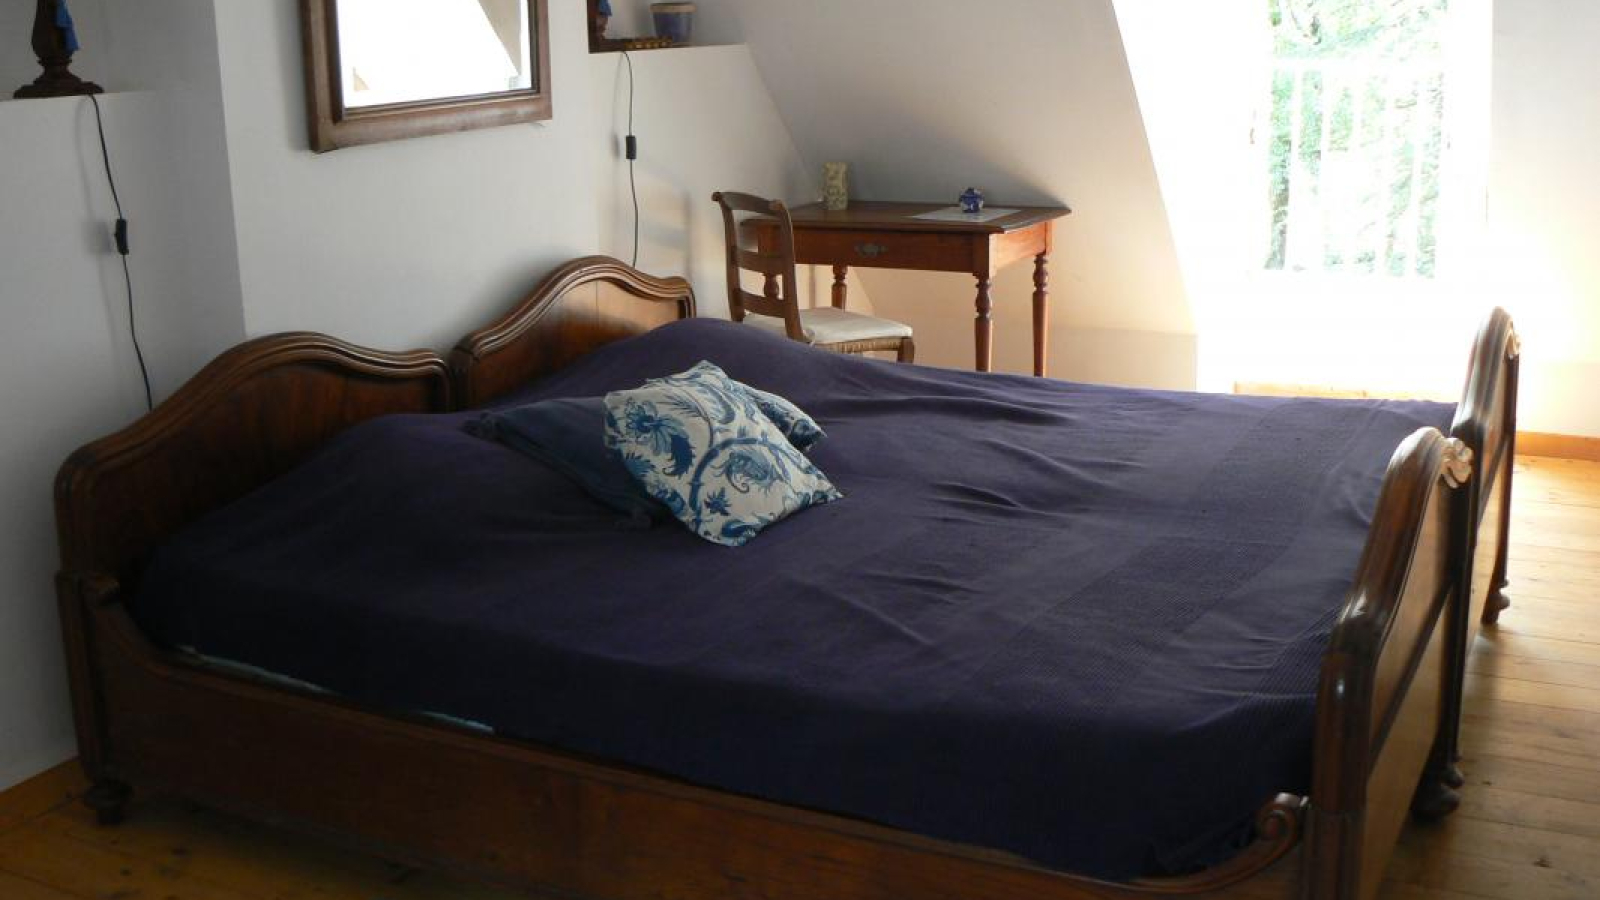 chambres d'hôtes Le Vieux Bellevue à VIEURE dans l'Allier en AUVERGNE, chambre Bleue, lit de 180 cm.